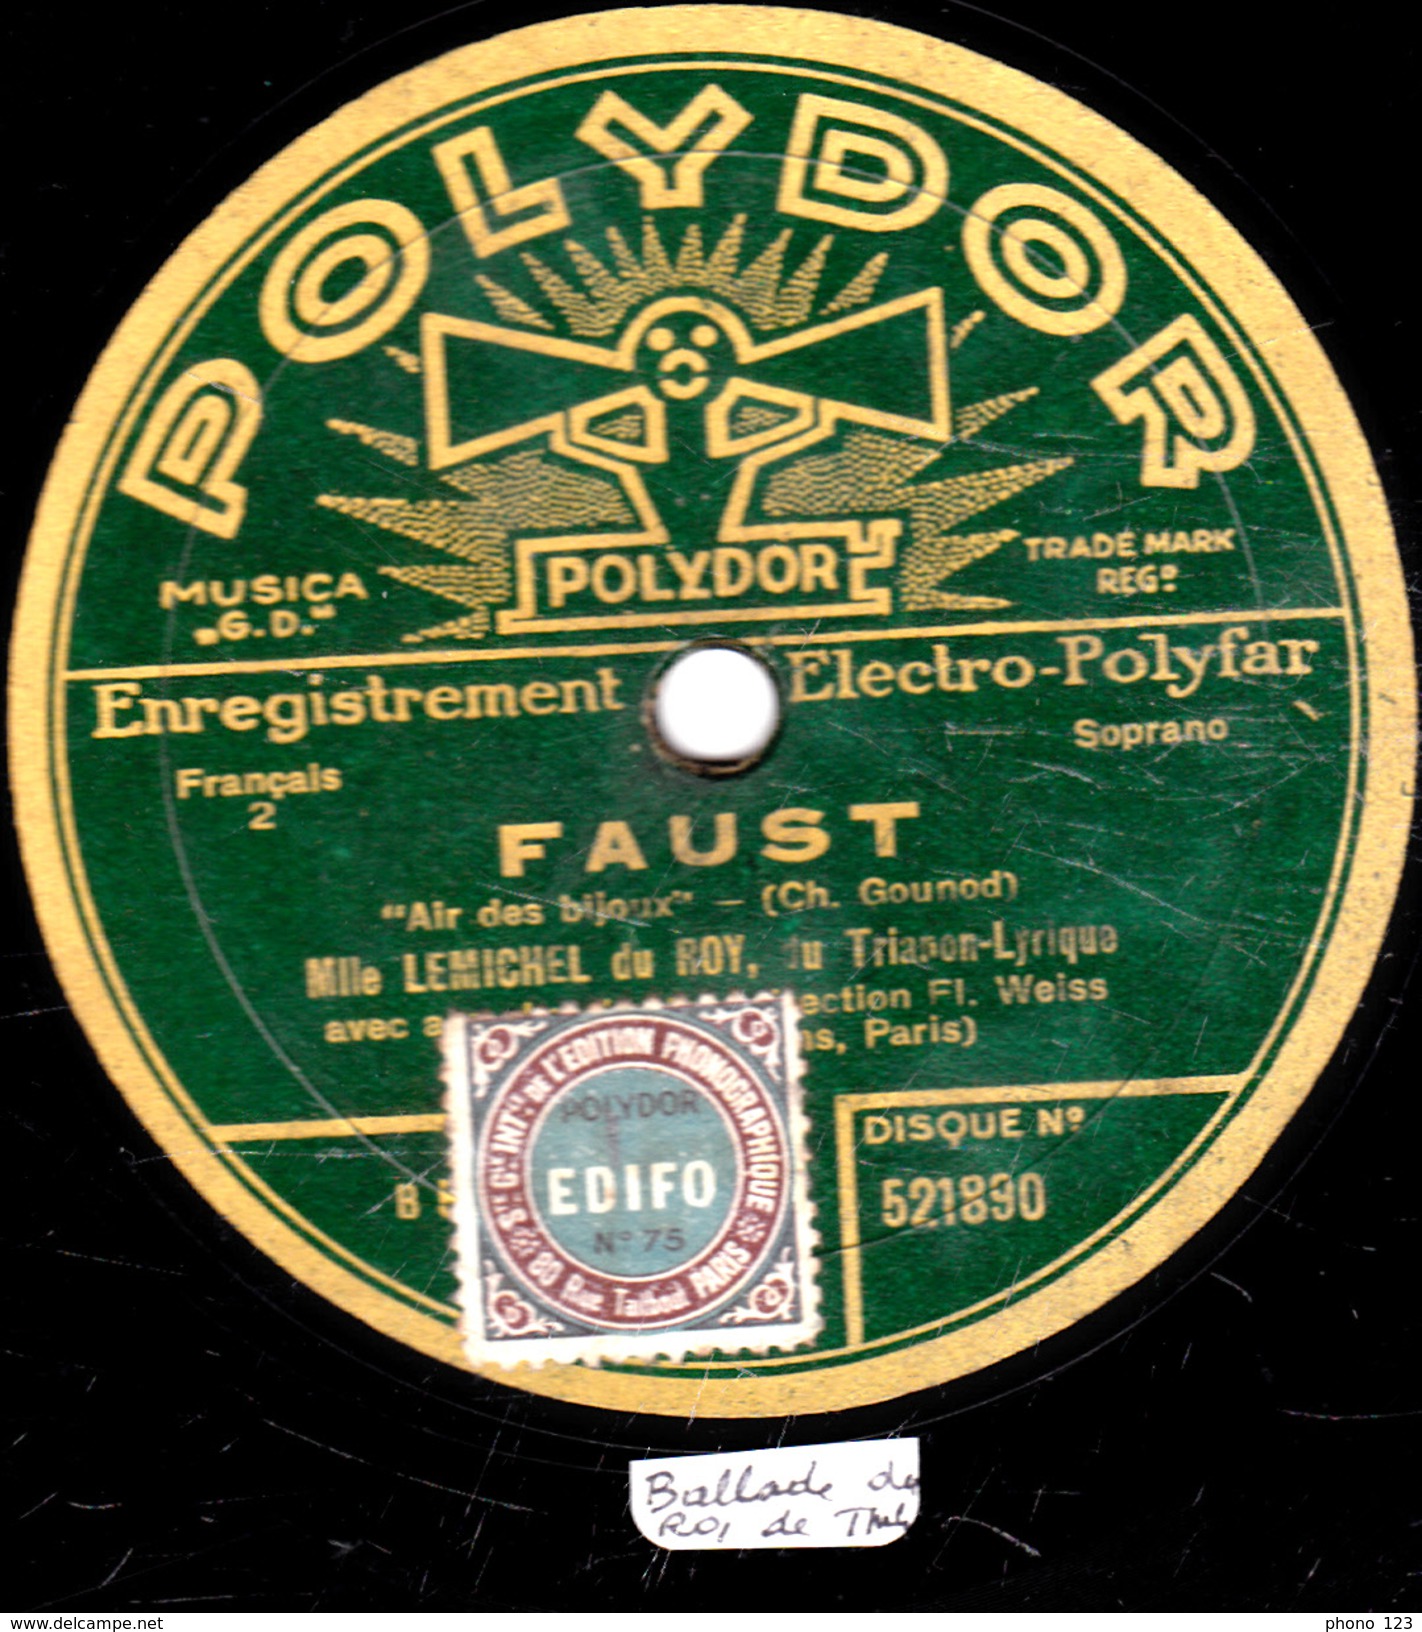 78 Trs - POLYDOR 521890 - état TB - Mlle LEMICHEL DU ROY - FAUST "Ballade Du Roi De Thulé" "Air Des Bijoux" - 78 T - Disques Pour Gramophone